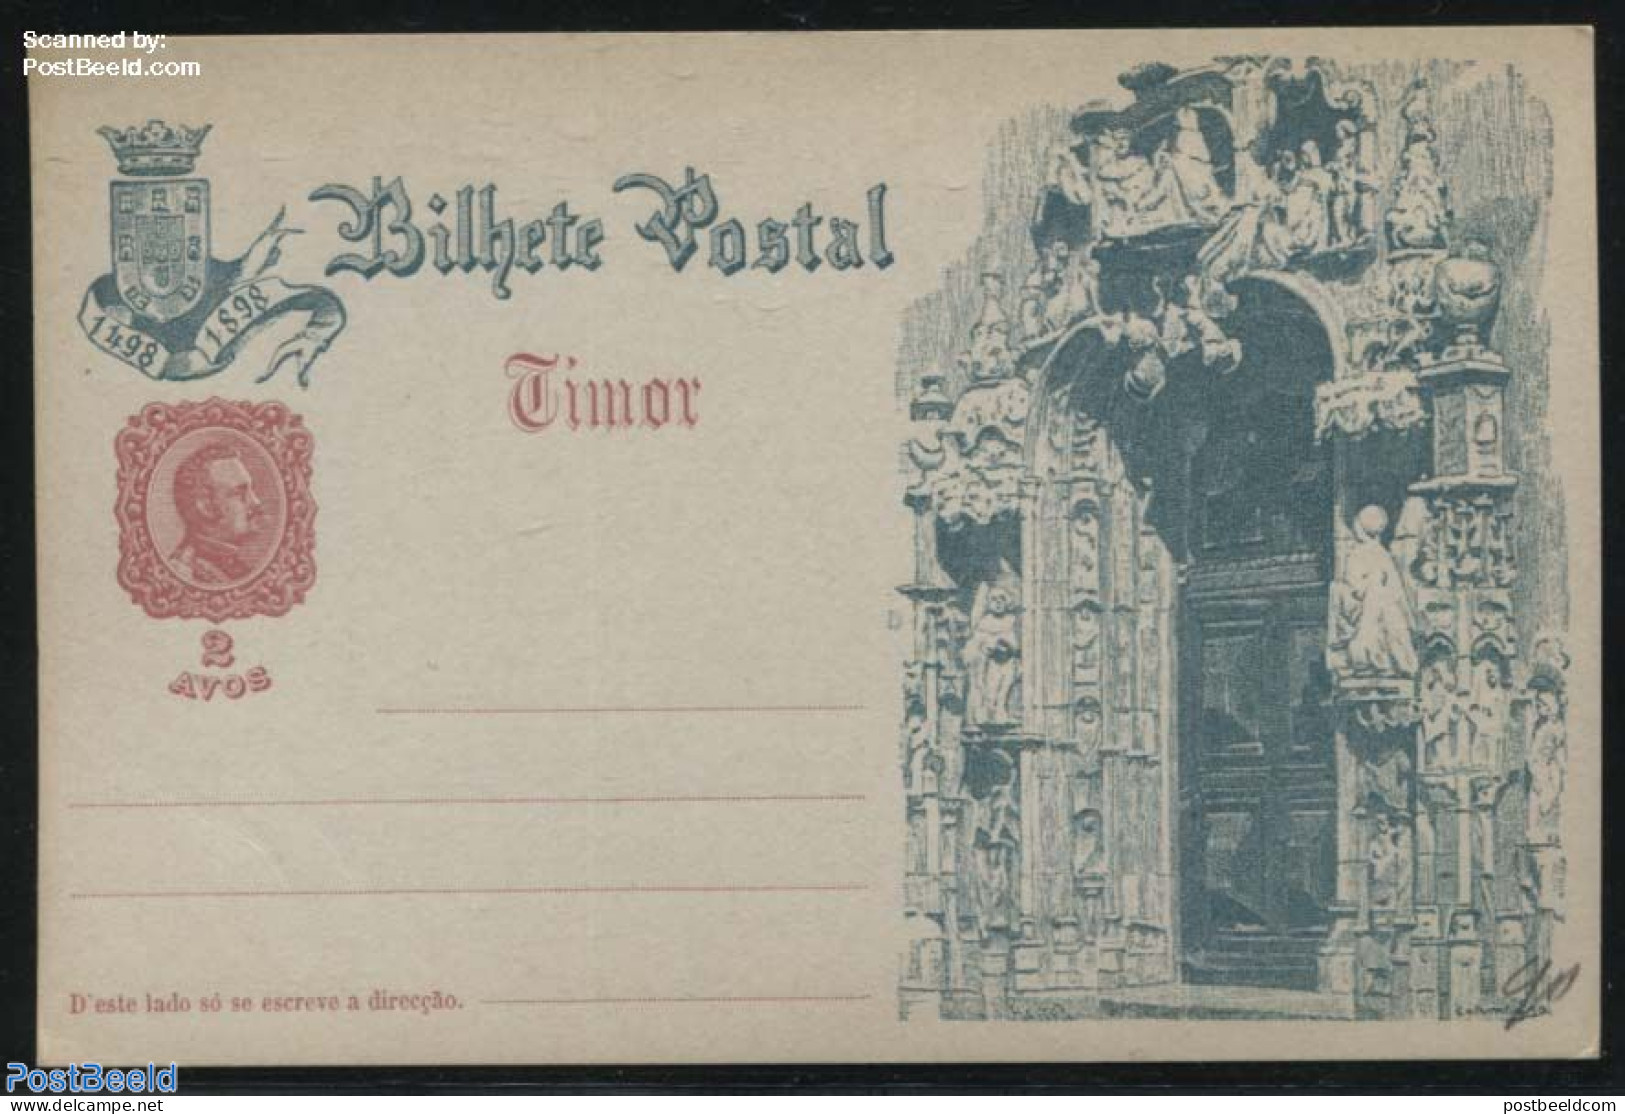 Timor 1898 Illustrated Postcard, 2 Avos, Portal, Unused Postal Stationary - Timor Orientale